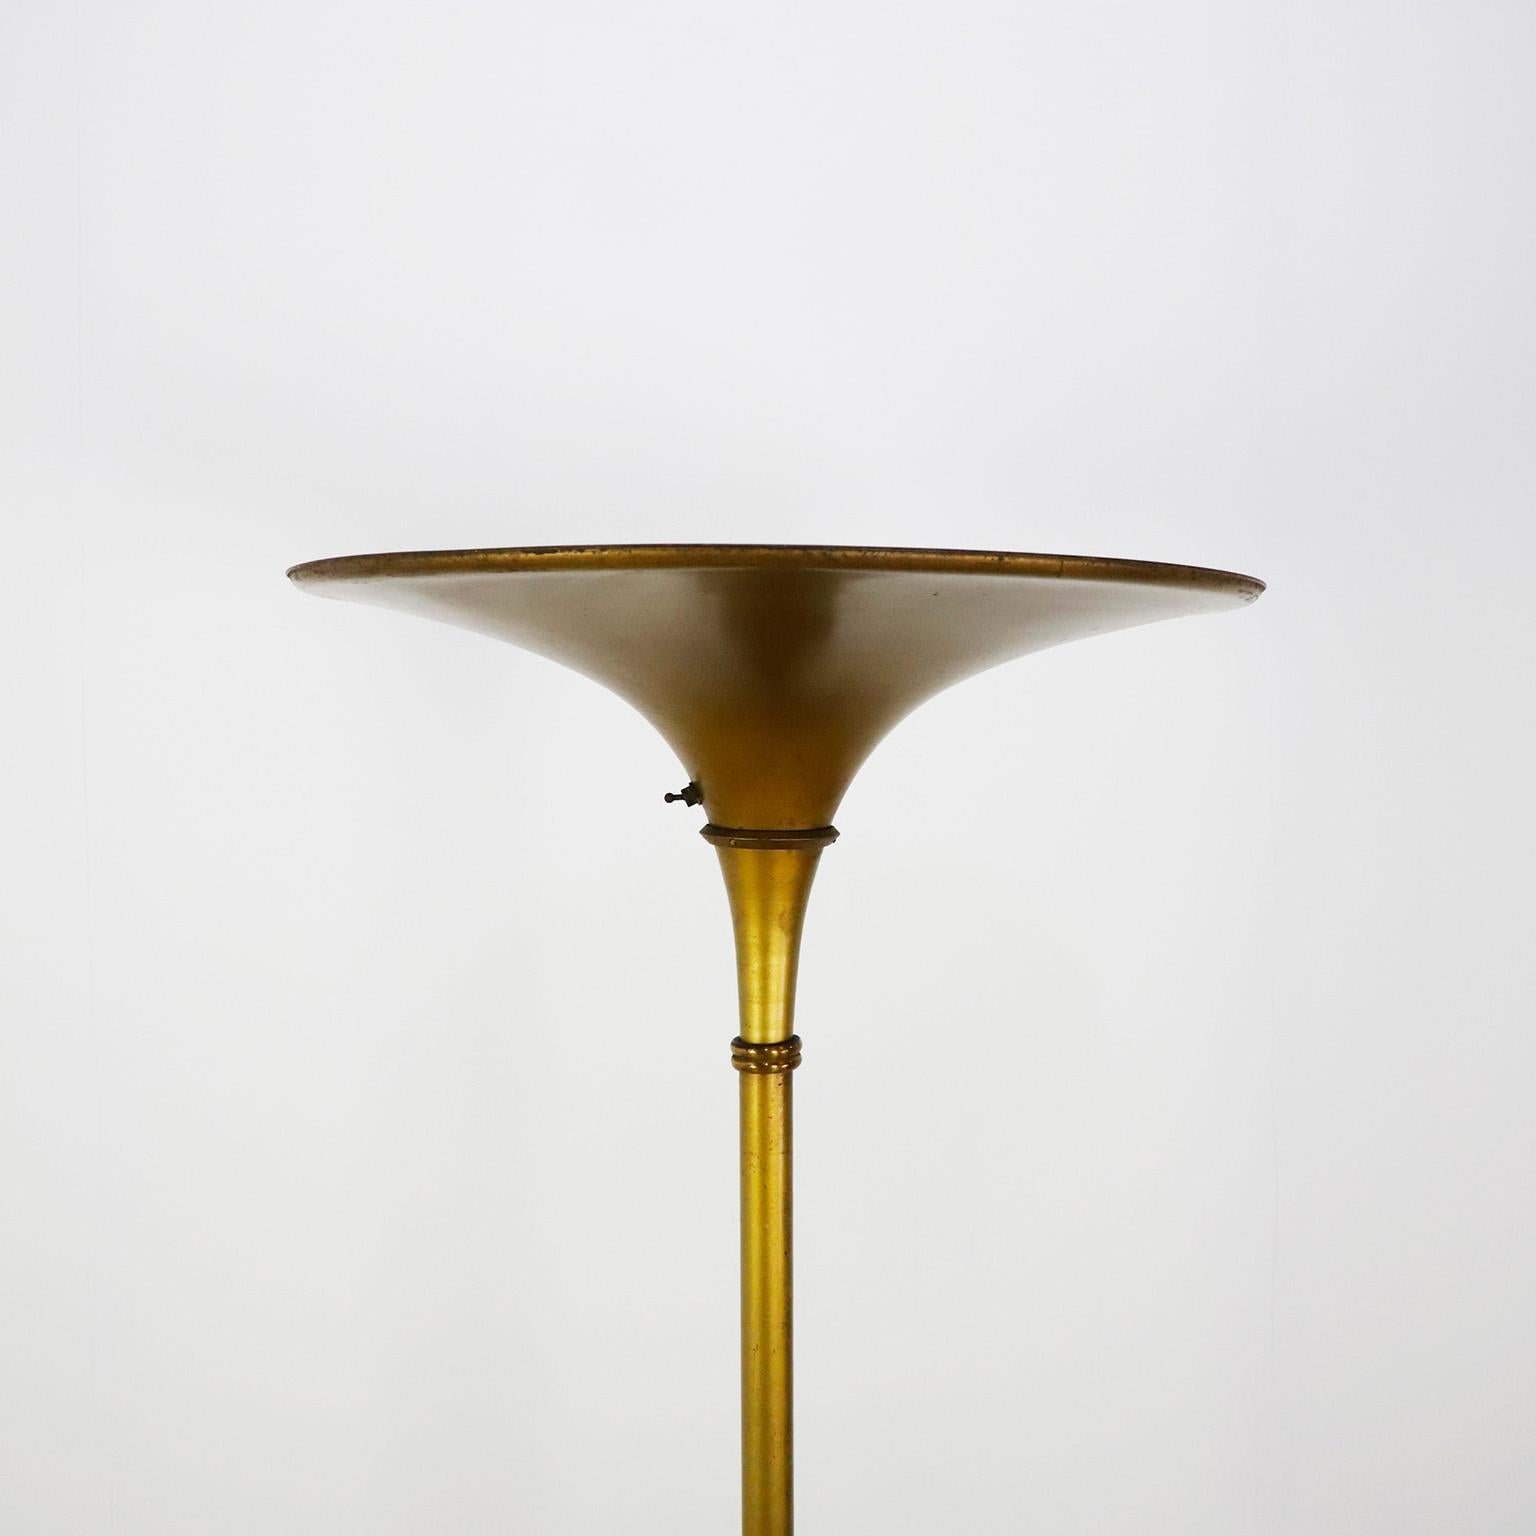 We offer this Art Deco Gold-Tone Aluminum Torchiere Floor Lamp. circa 1940.